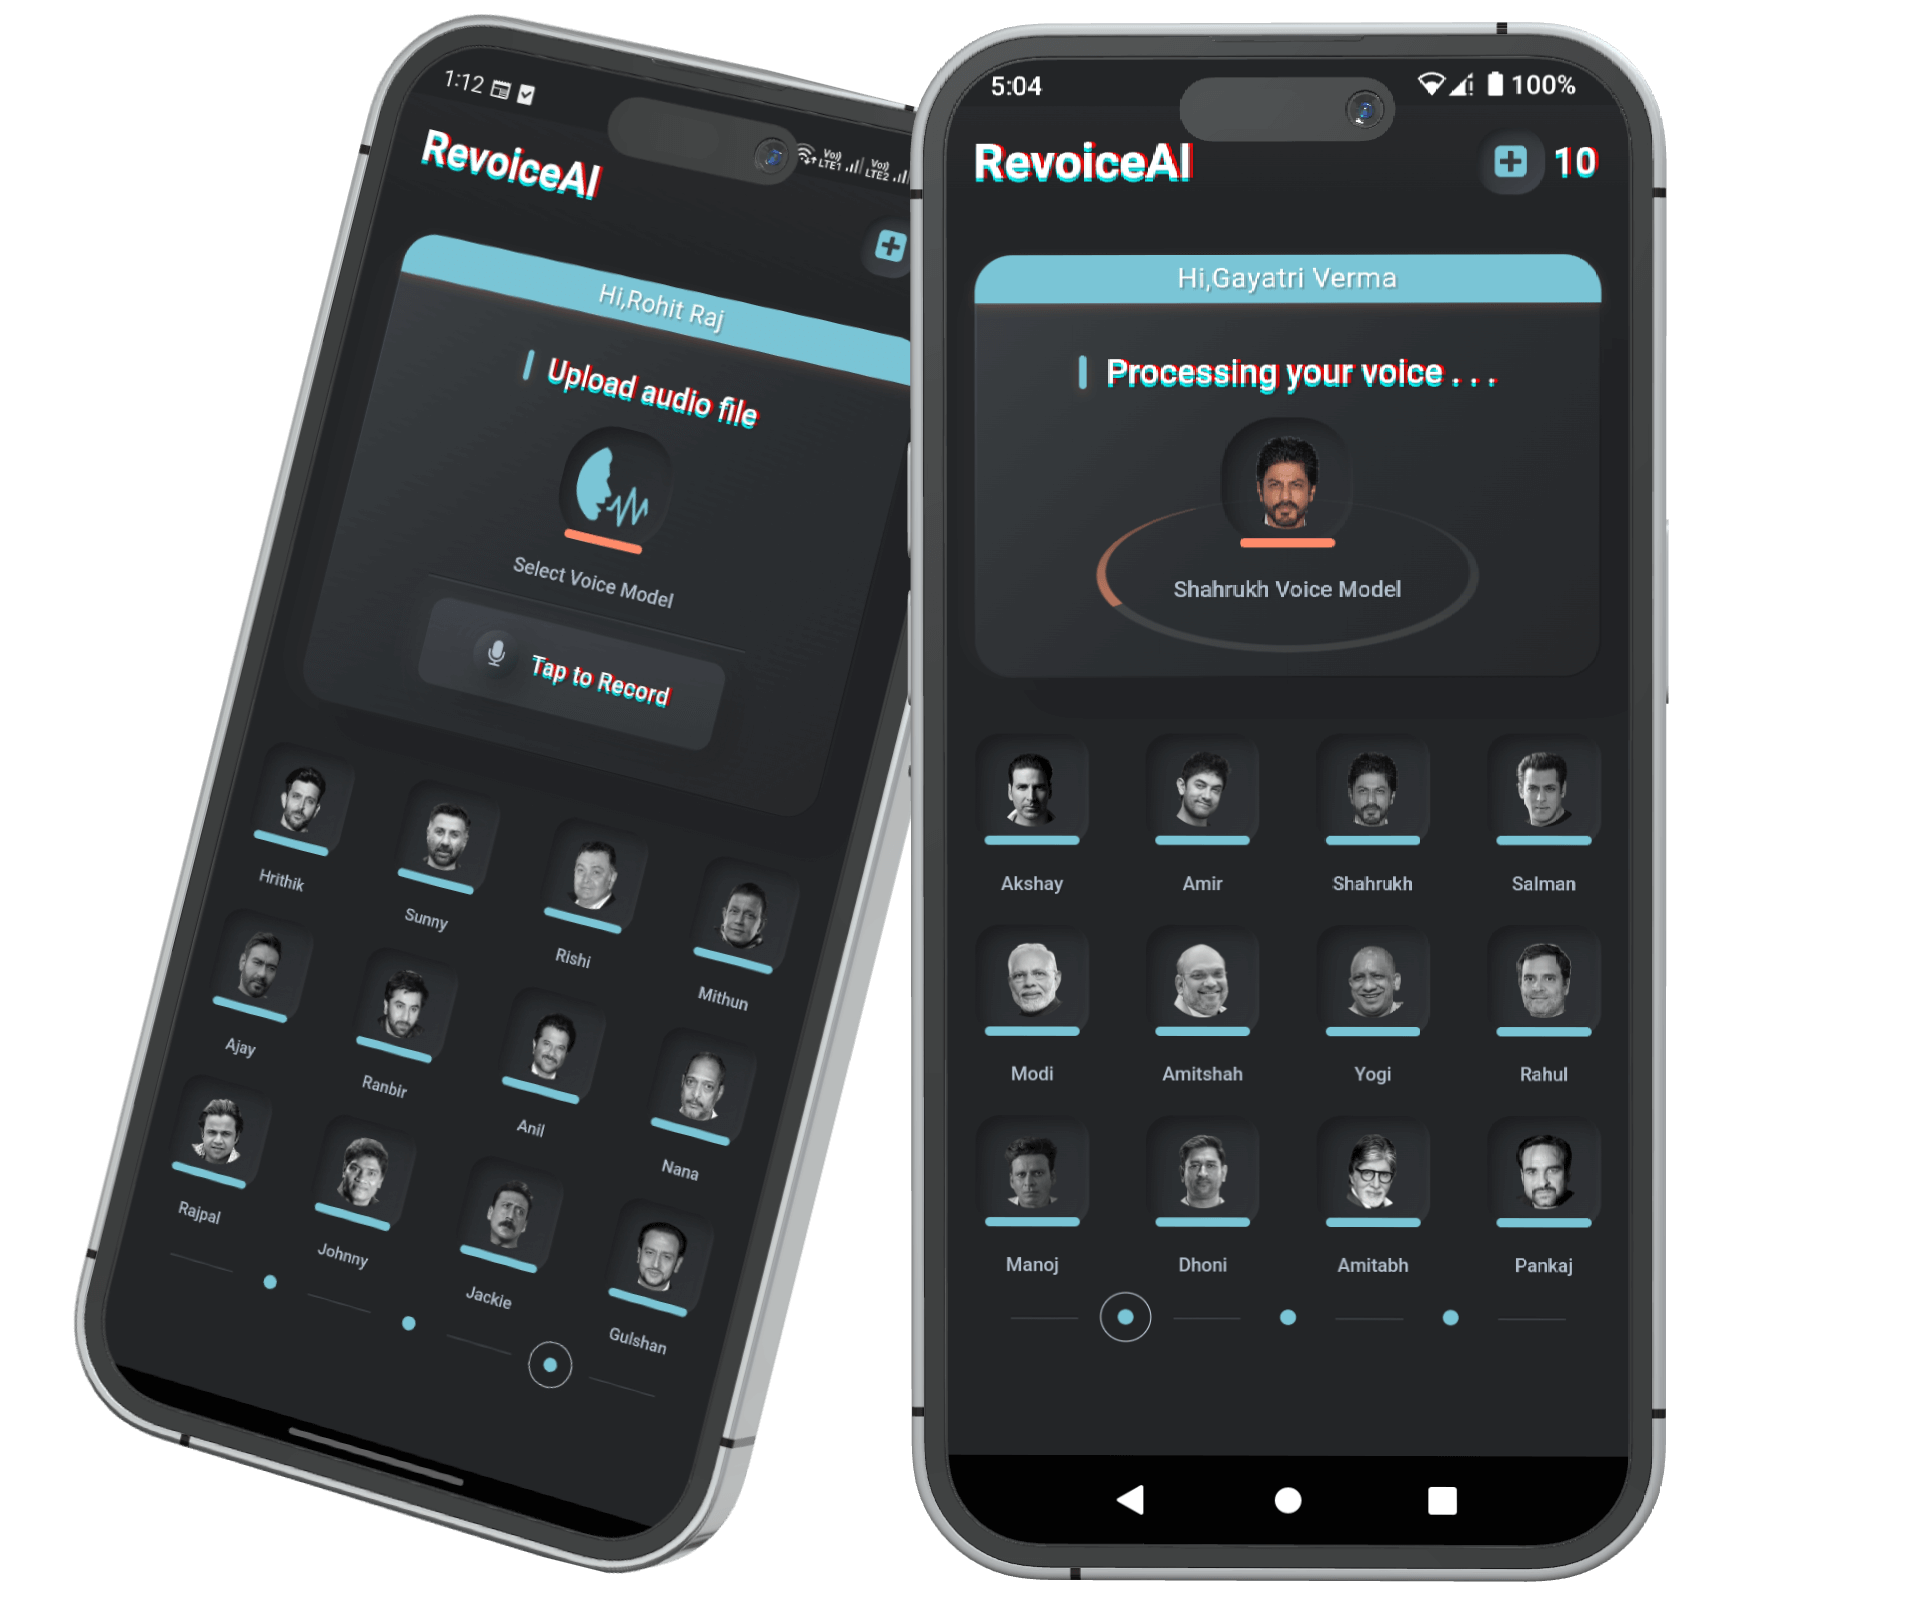 RevoiceAI - AI Voice Clone App